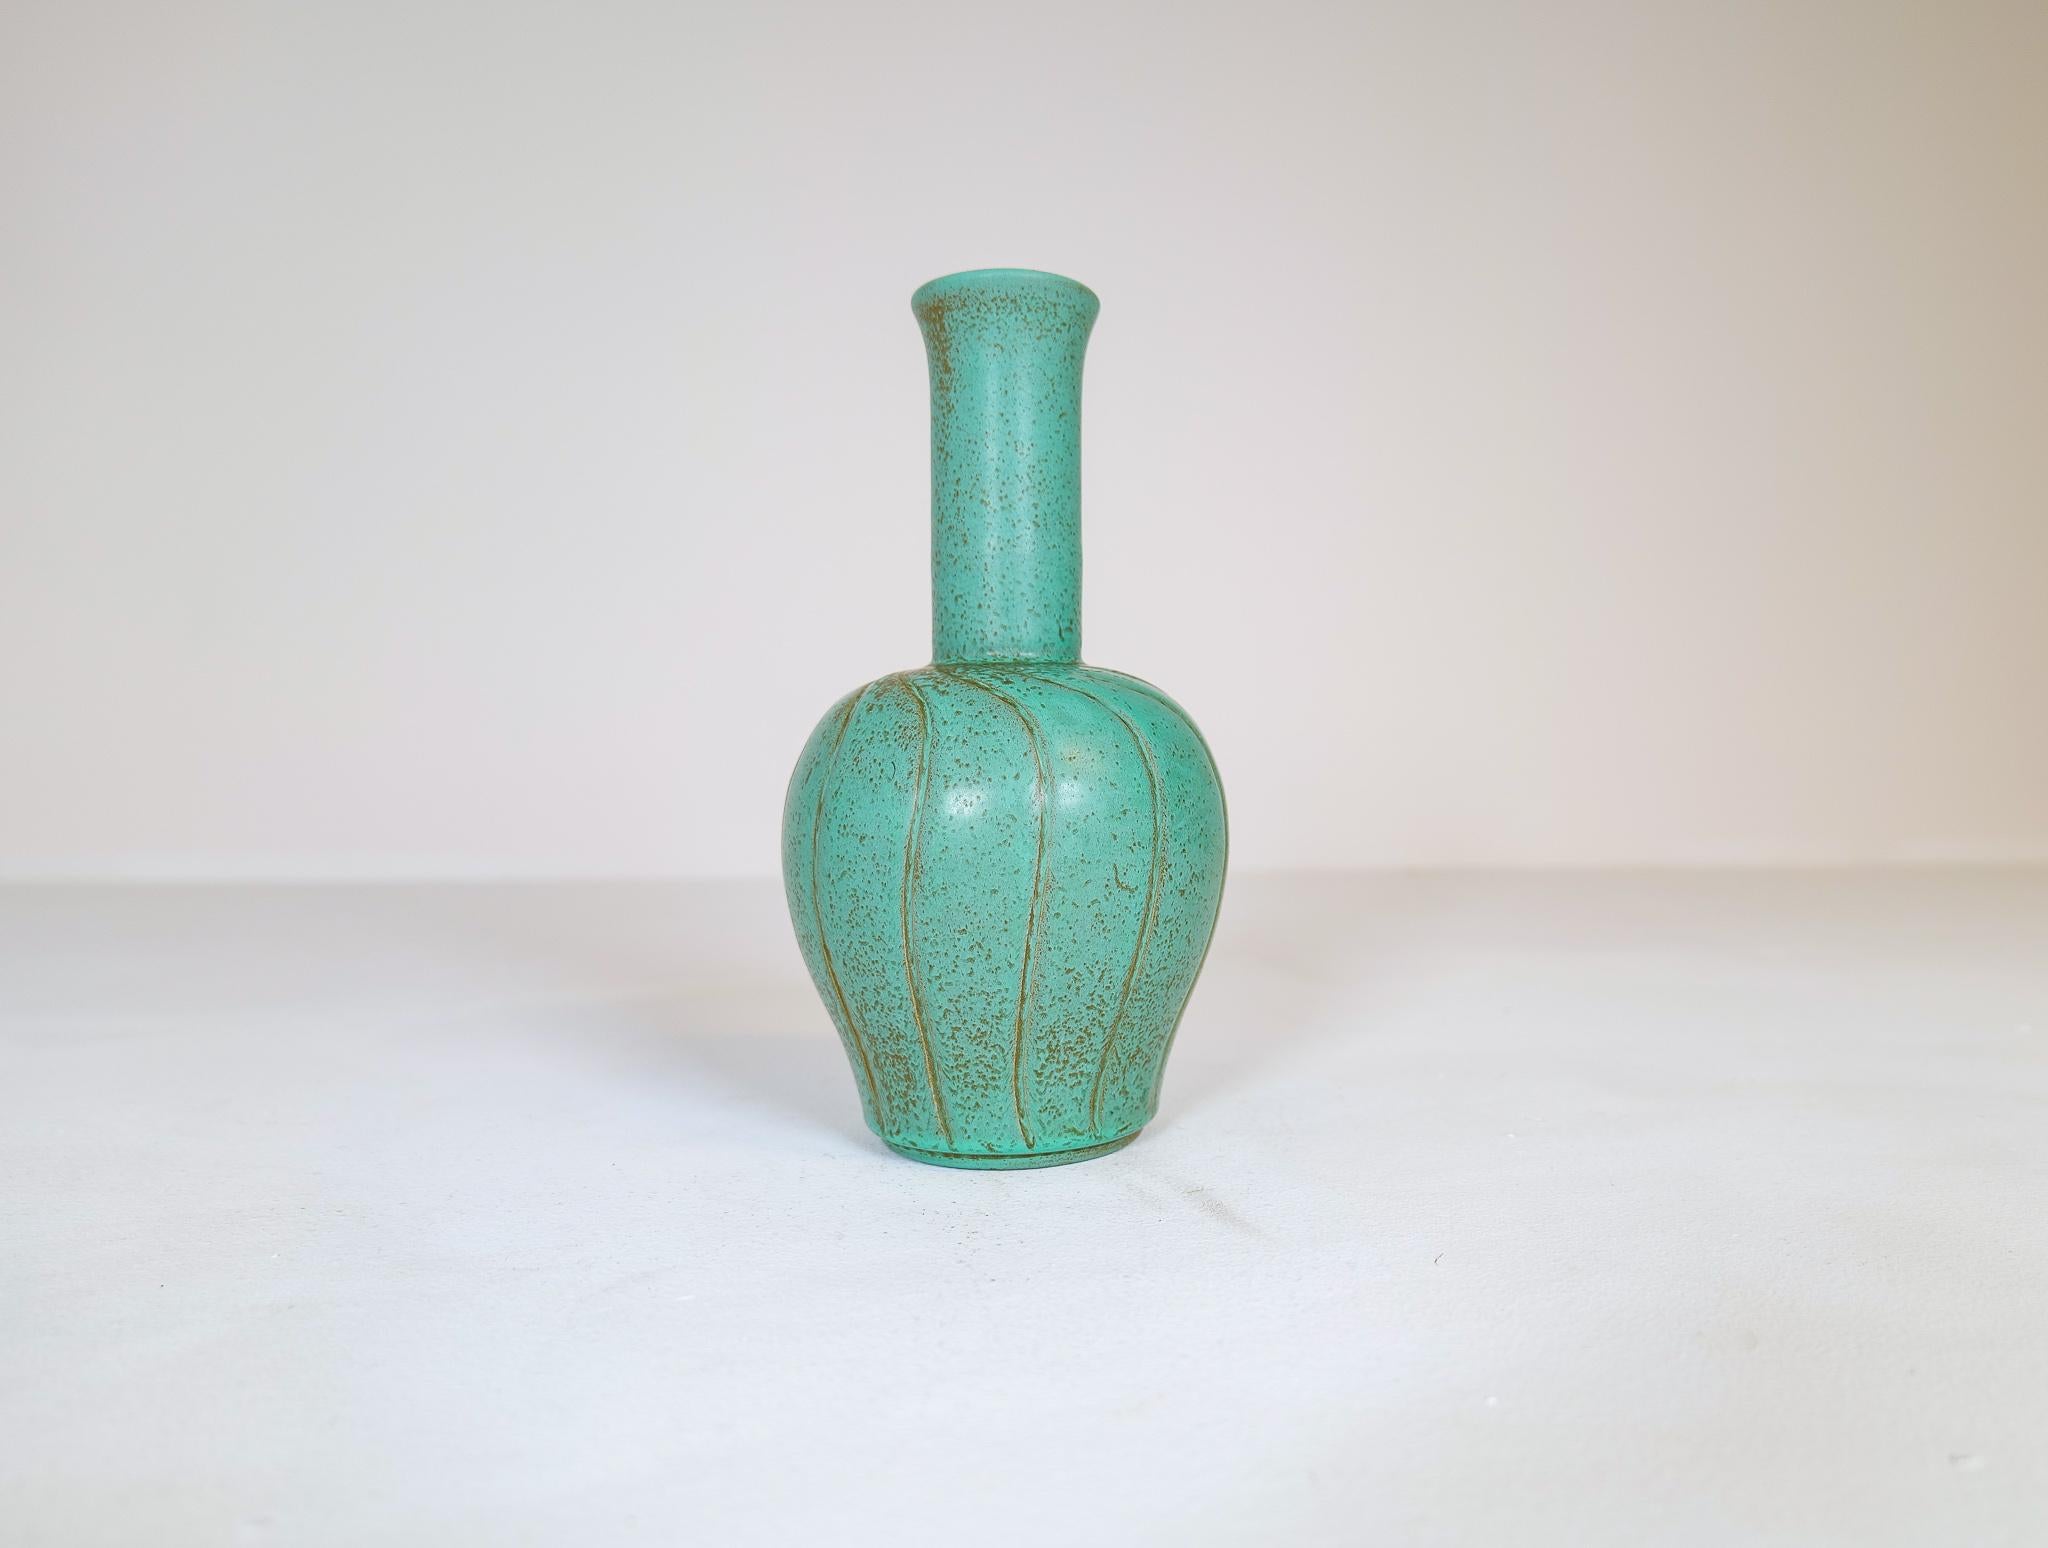 Merveilleux vase en céramique fabriqué en Suède à Bo Fajans et conçu par Ewald Dahlskog 1937.
La forme et les lignes du vase se marient parfaitement avec la merveilleuse glaçure. Les tourbillons de vert plus foncé se marient parfaitement avec le